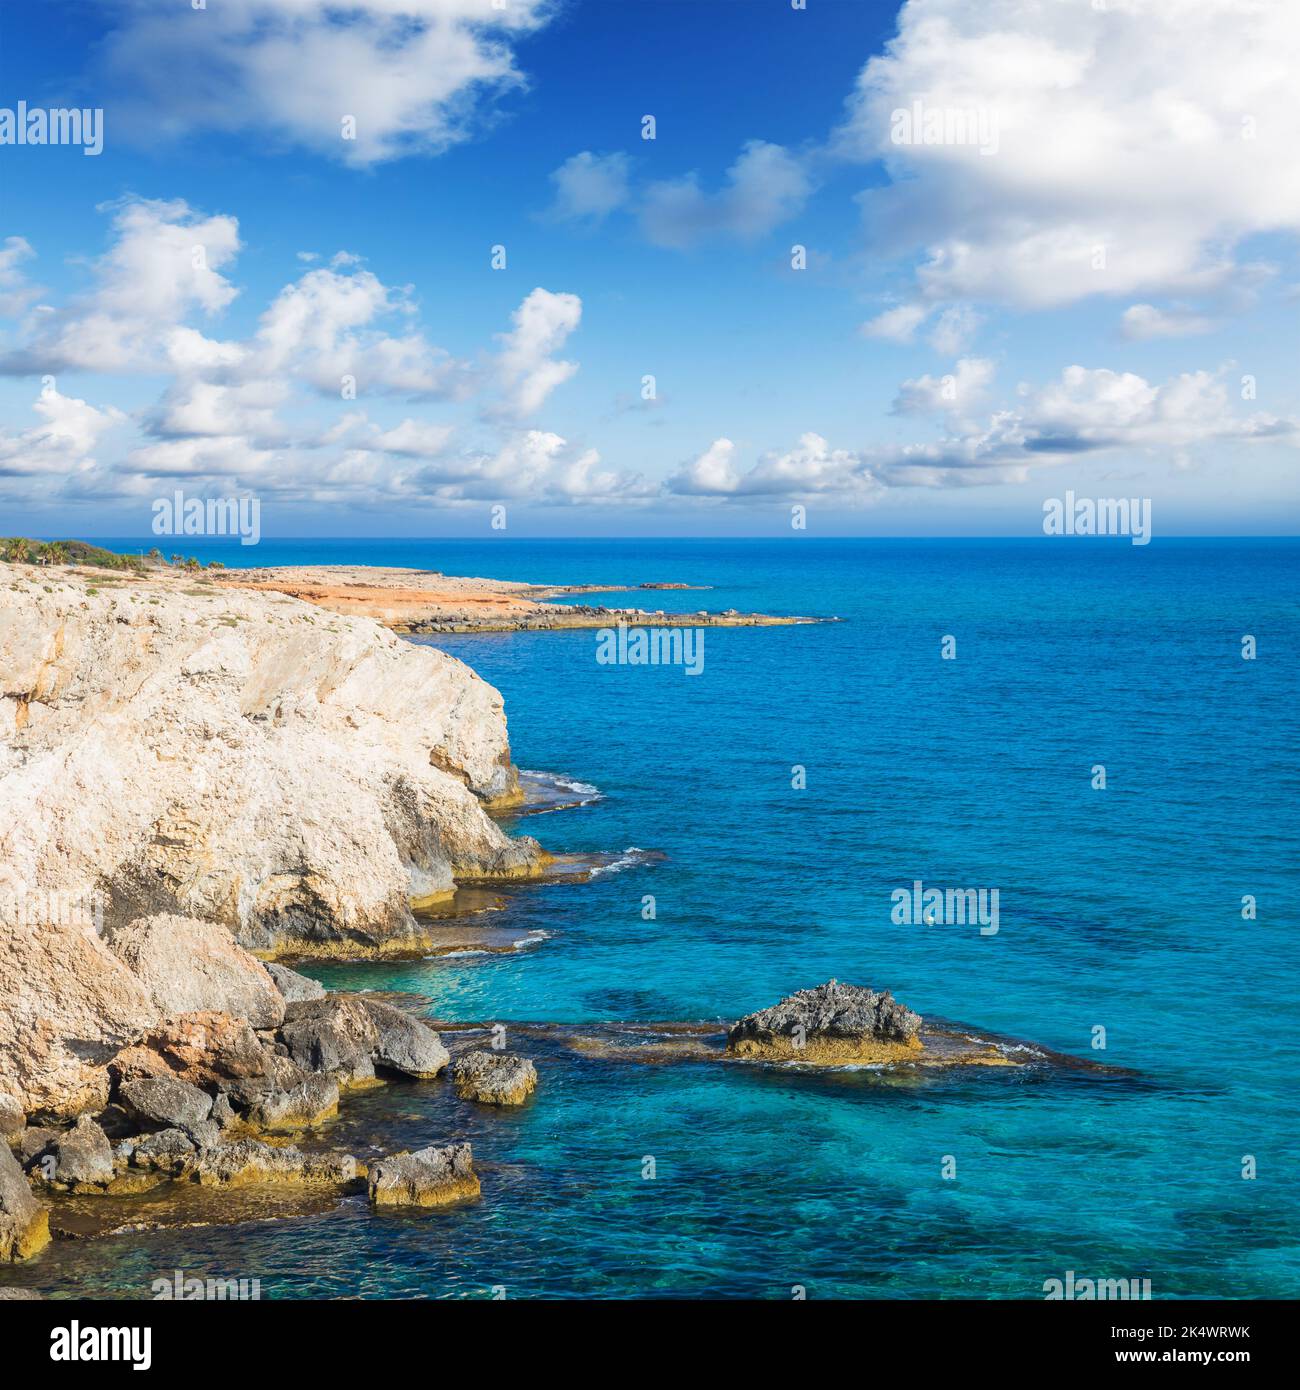 Vue sur la mer avec rochers et eau de mer sous ciel nuageux. Ayia Napa, île de Chypre. Photo de paysage carré Banque D'Images